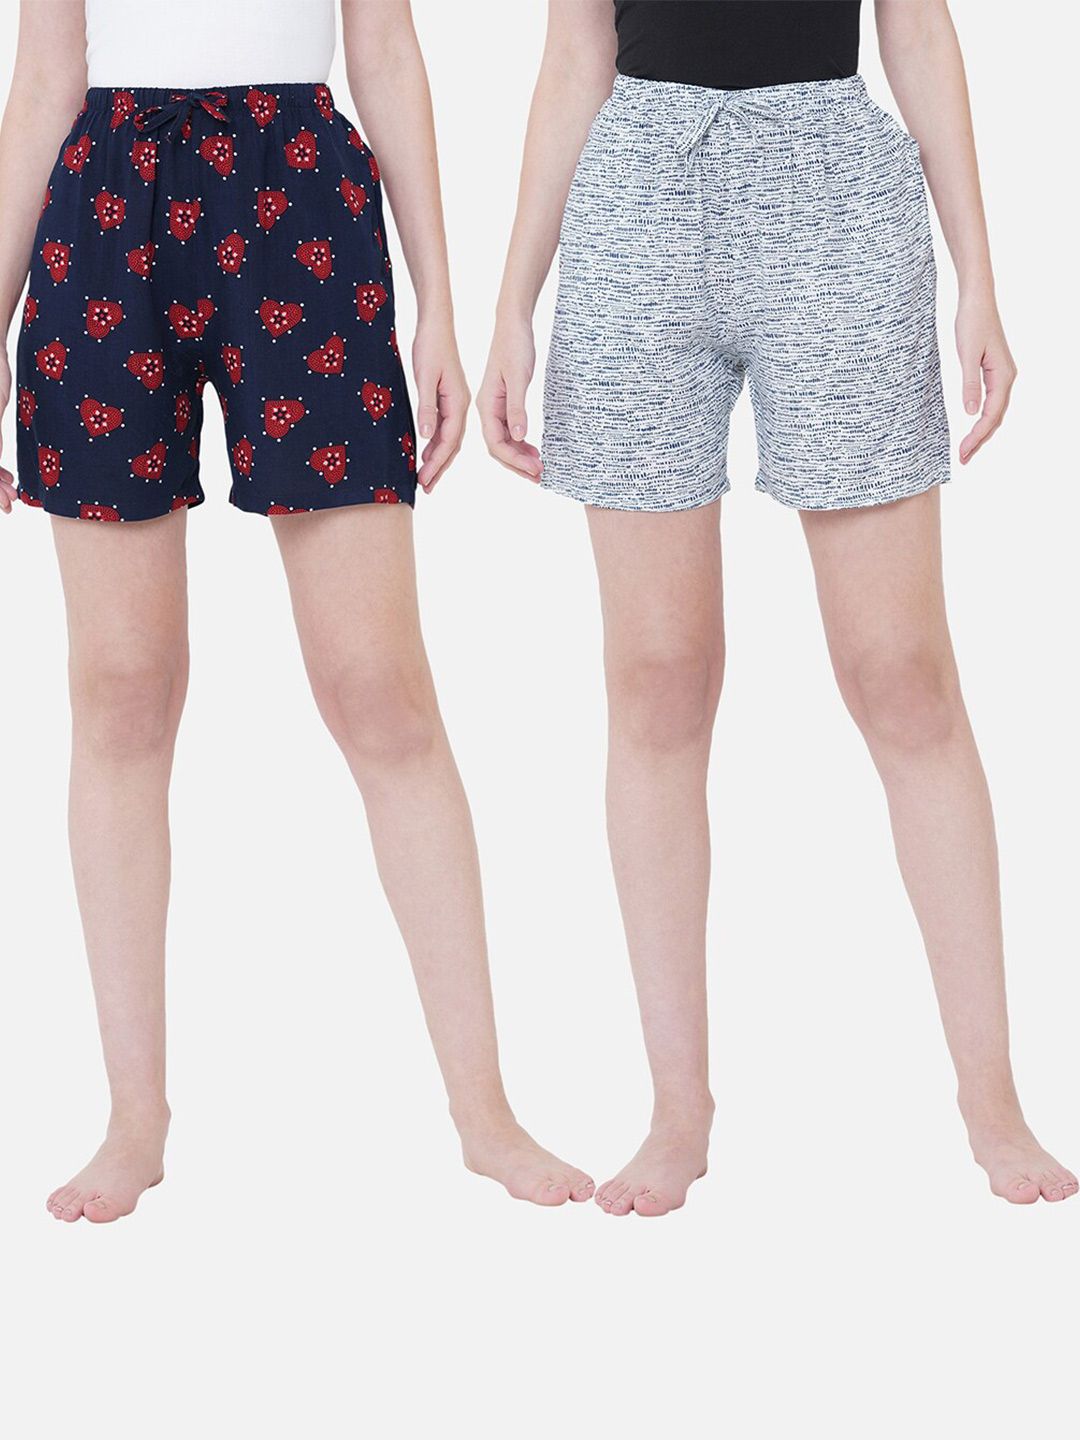 URBAN SCOTTISH Women Set of 2 Printed Lounge Shorts Price in India